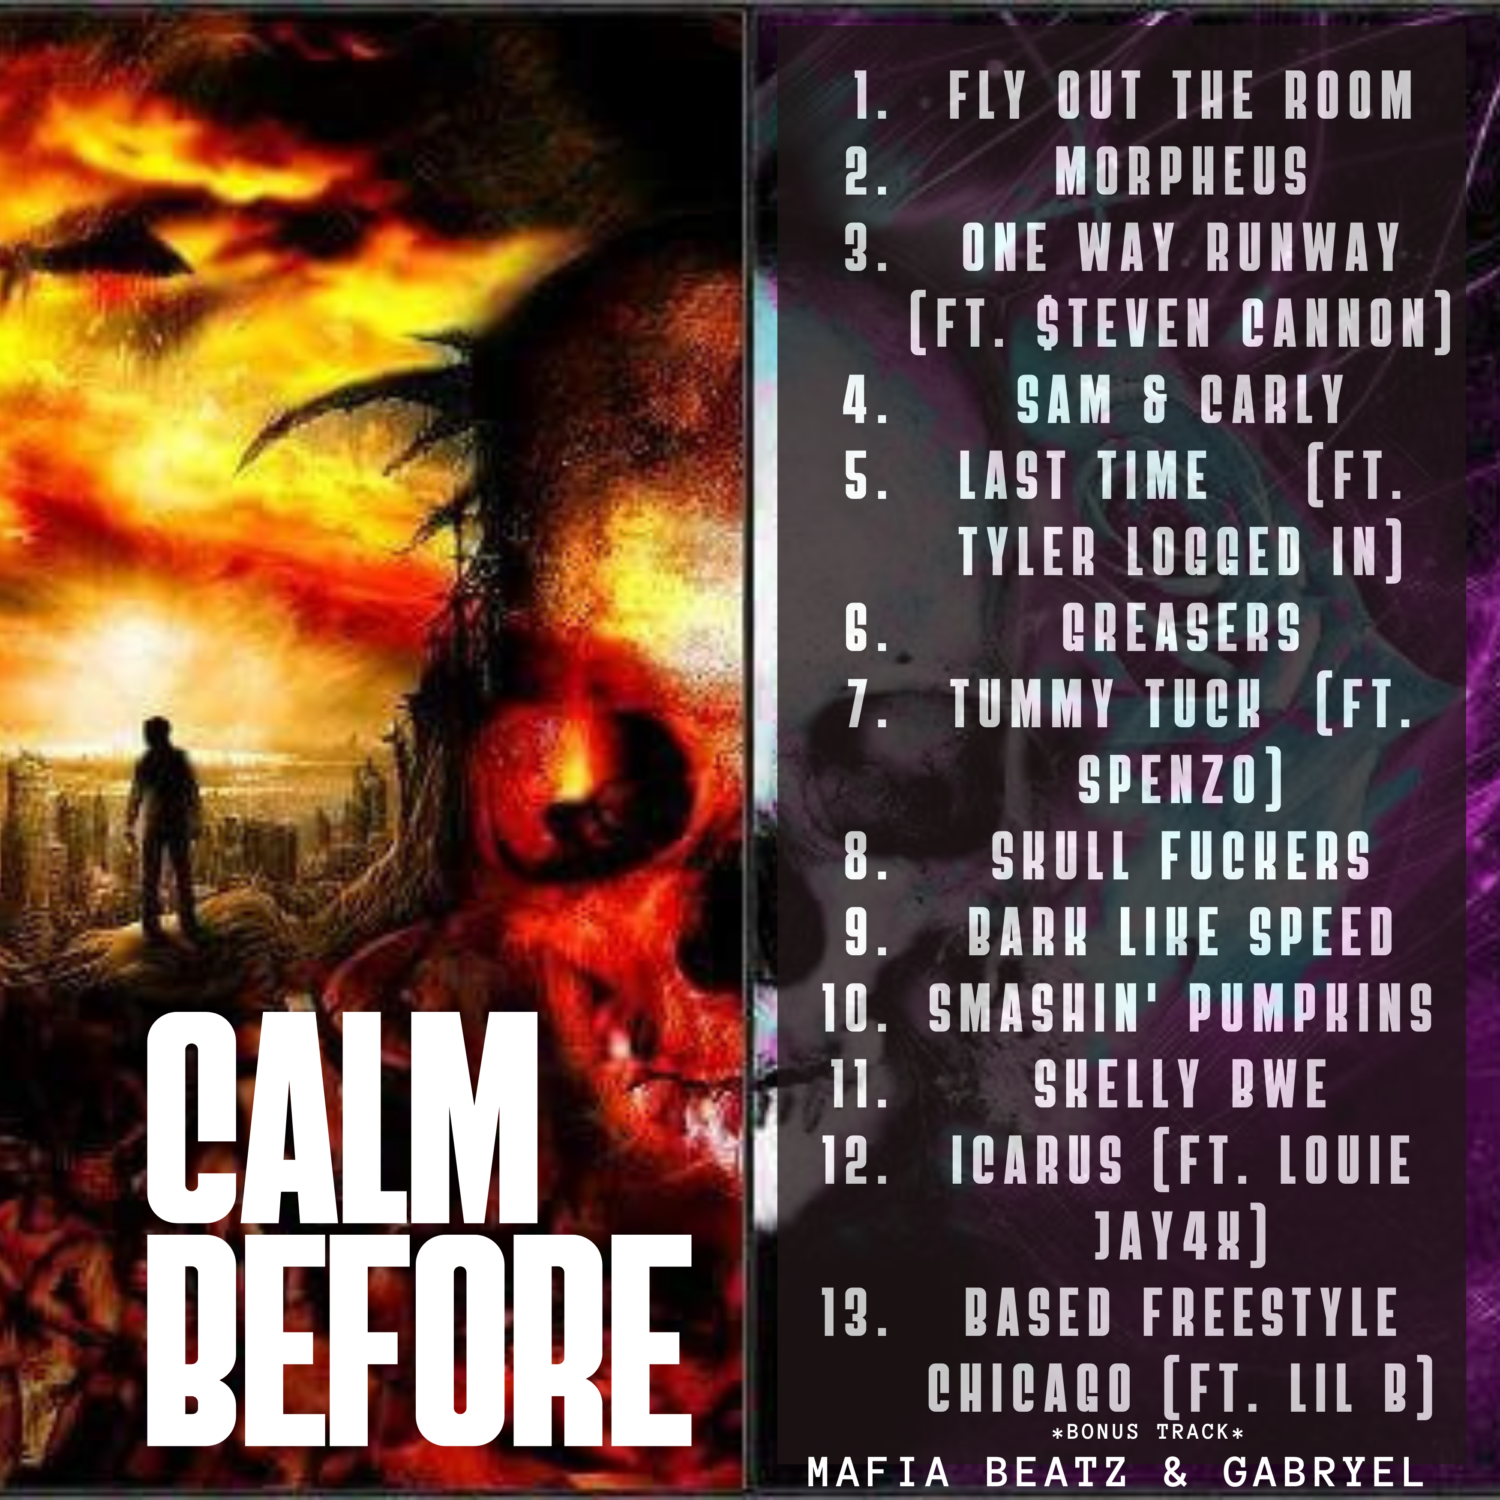 Mafia Beatz & Gabryel Release “Calm Before” album!